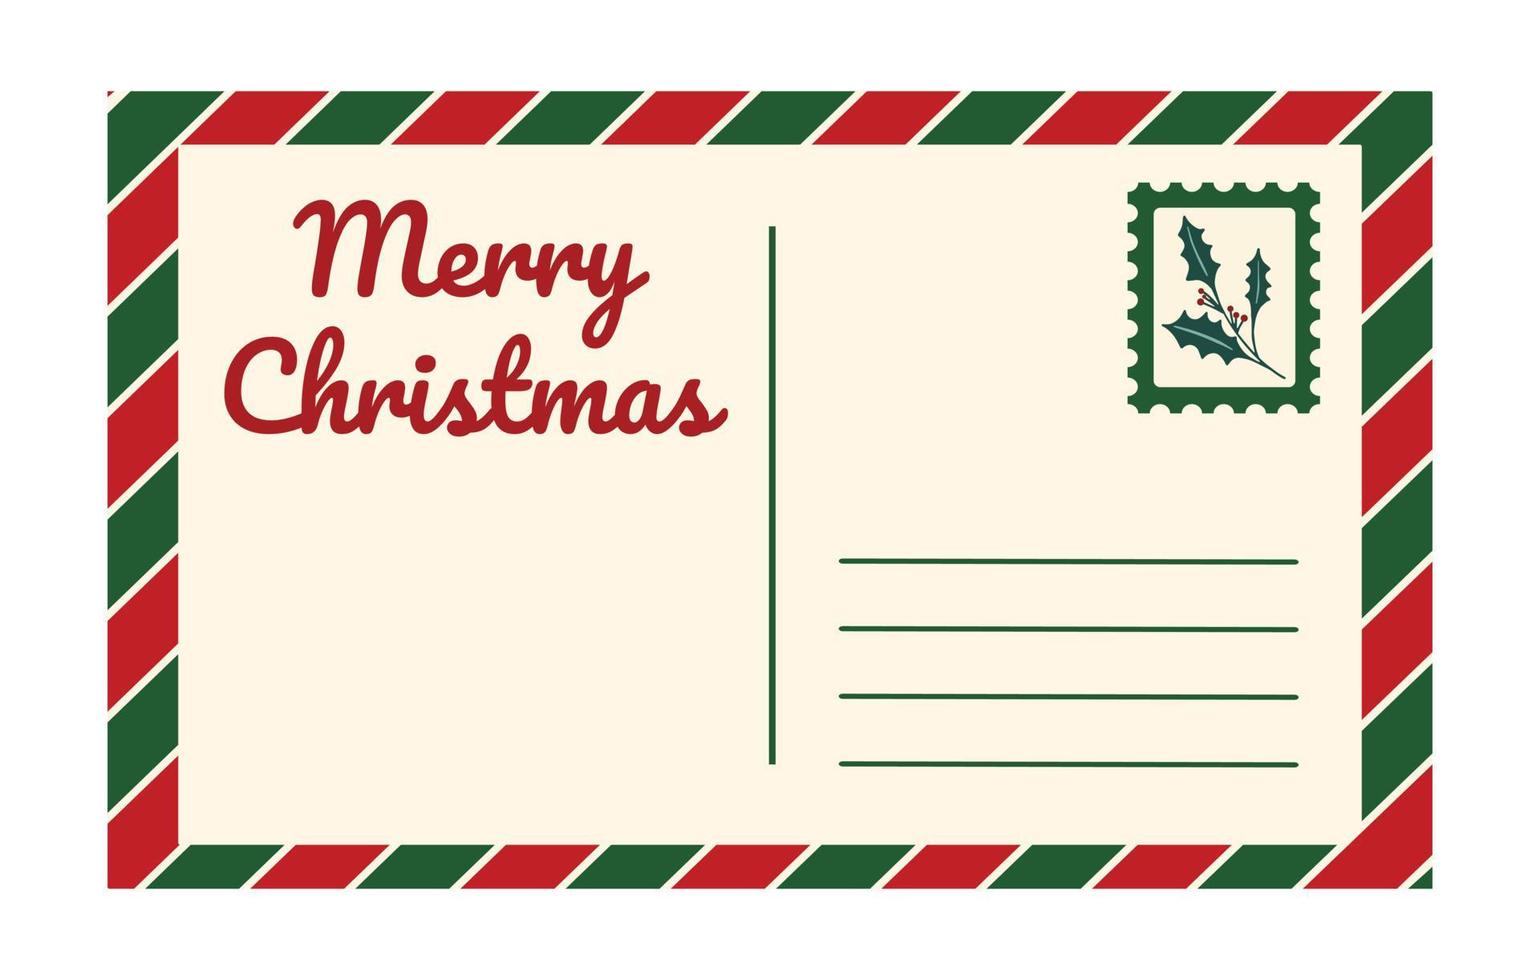 plantilla de postal de Navidad vintage vector aislado sobre fondo blanco. Tarjeta postal retro antigua romántica vacía con texto feliz navidad